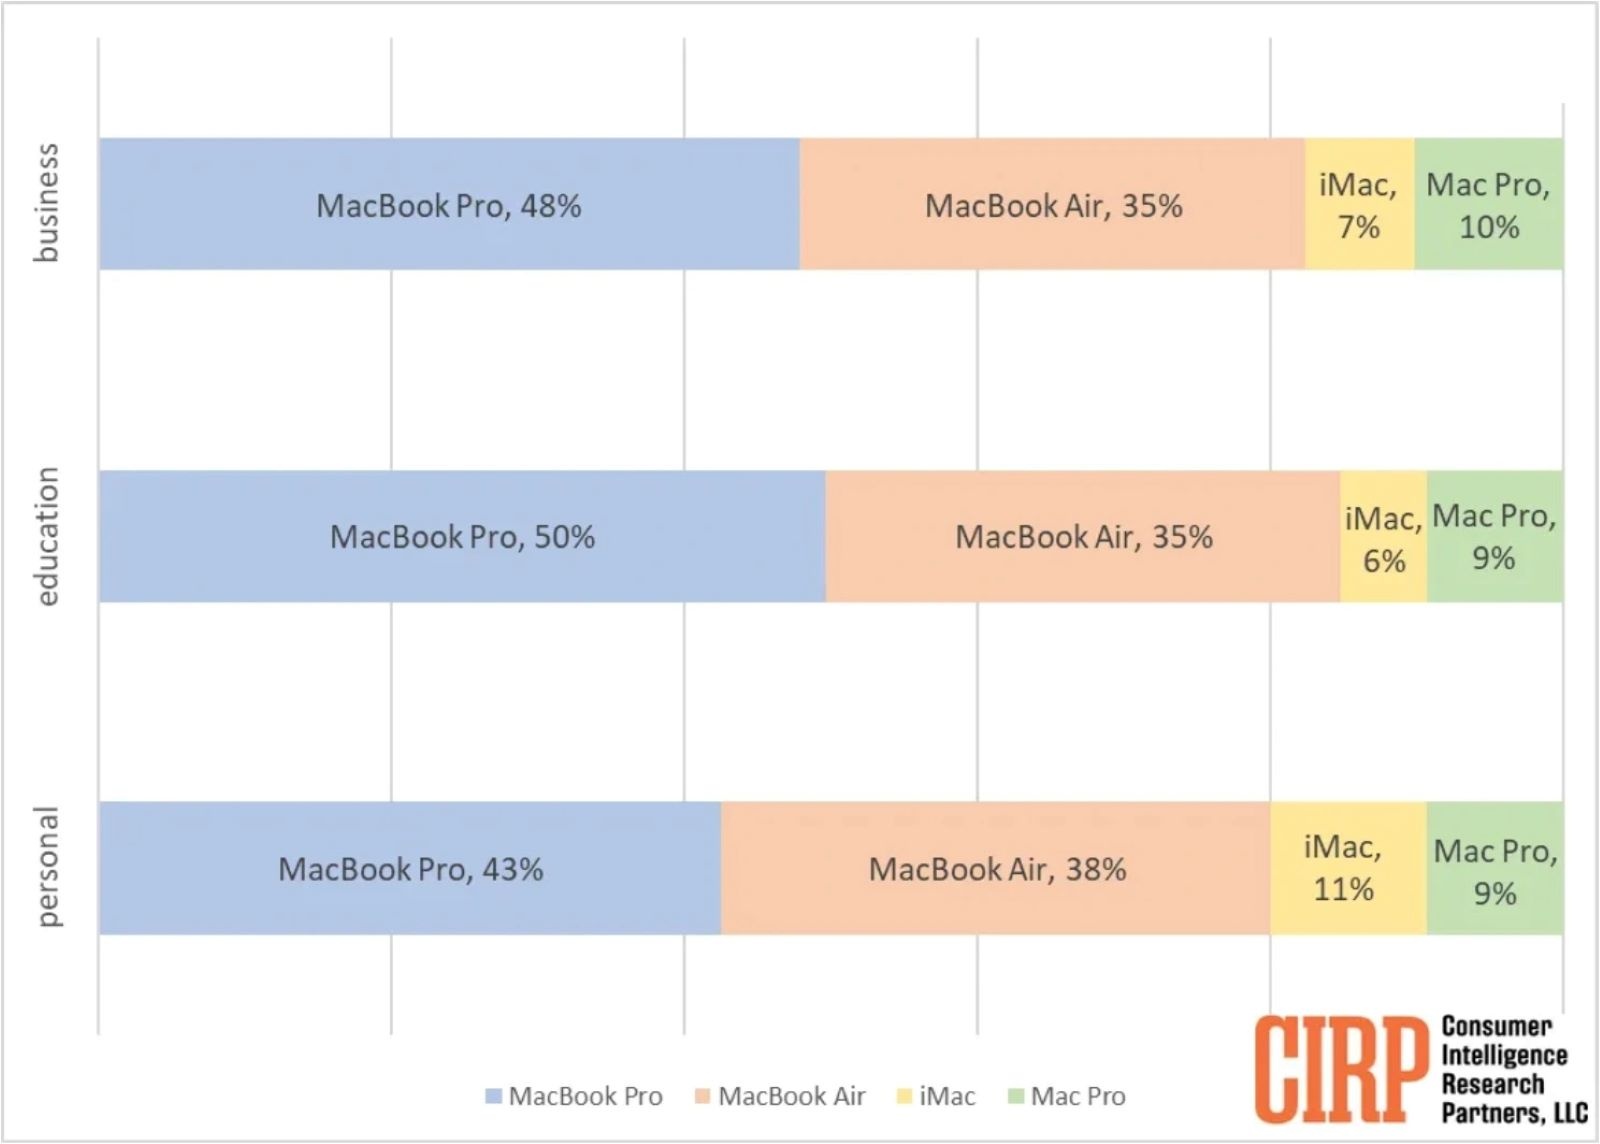 Báo cáo của CIRP về xu hướng sử dụng các thiết bị Mac của người tiêu dùng